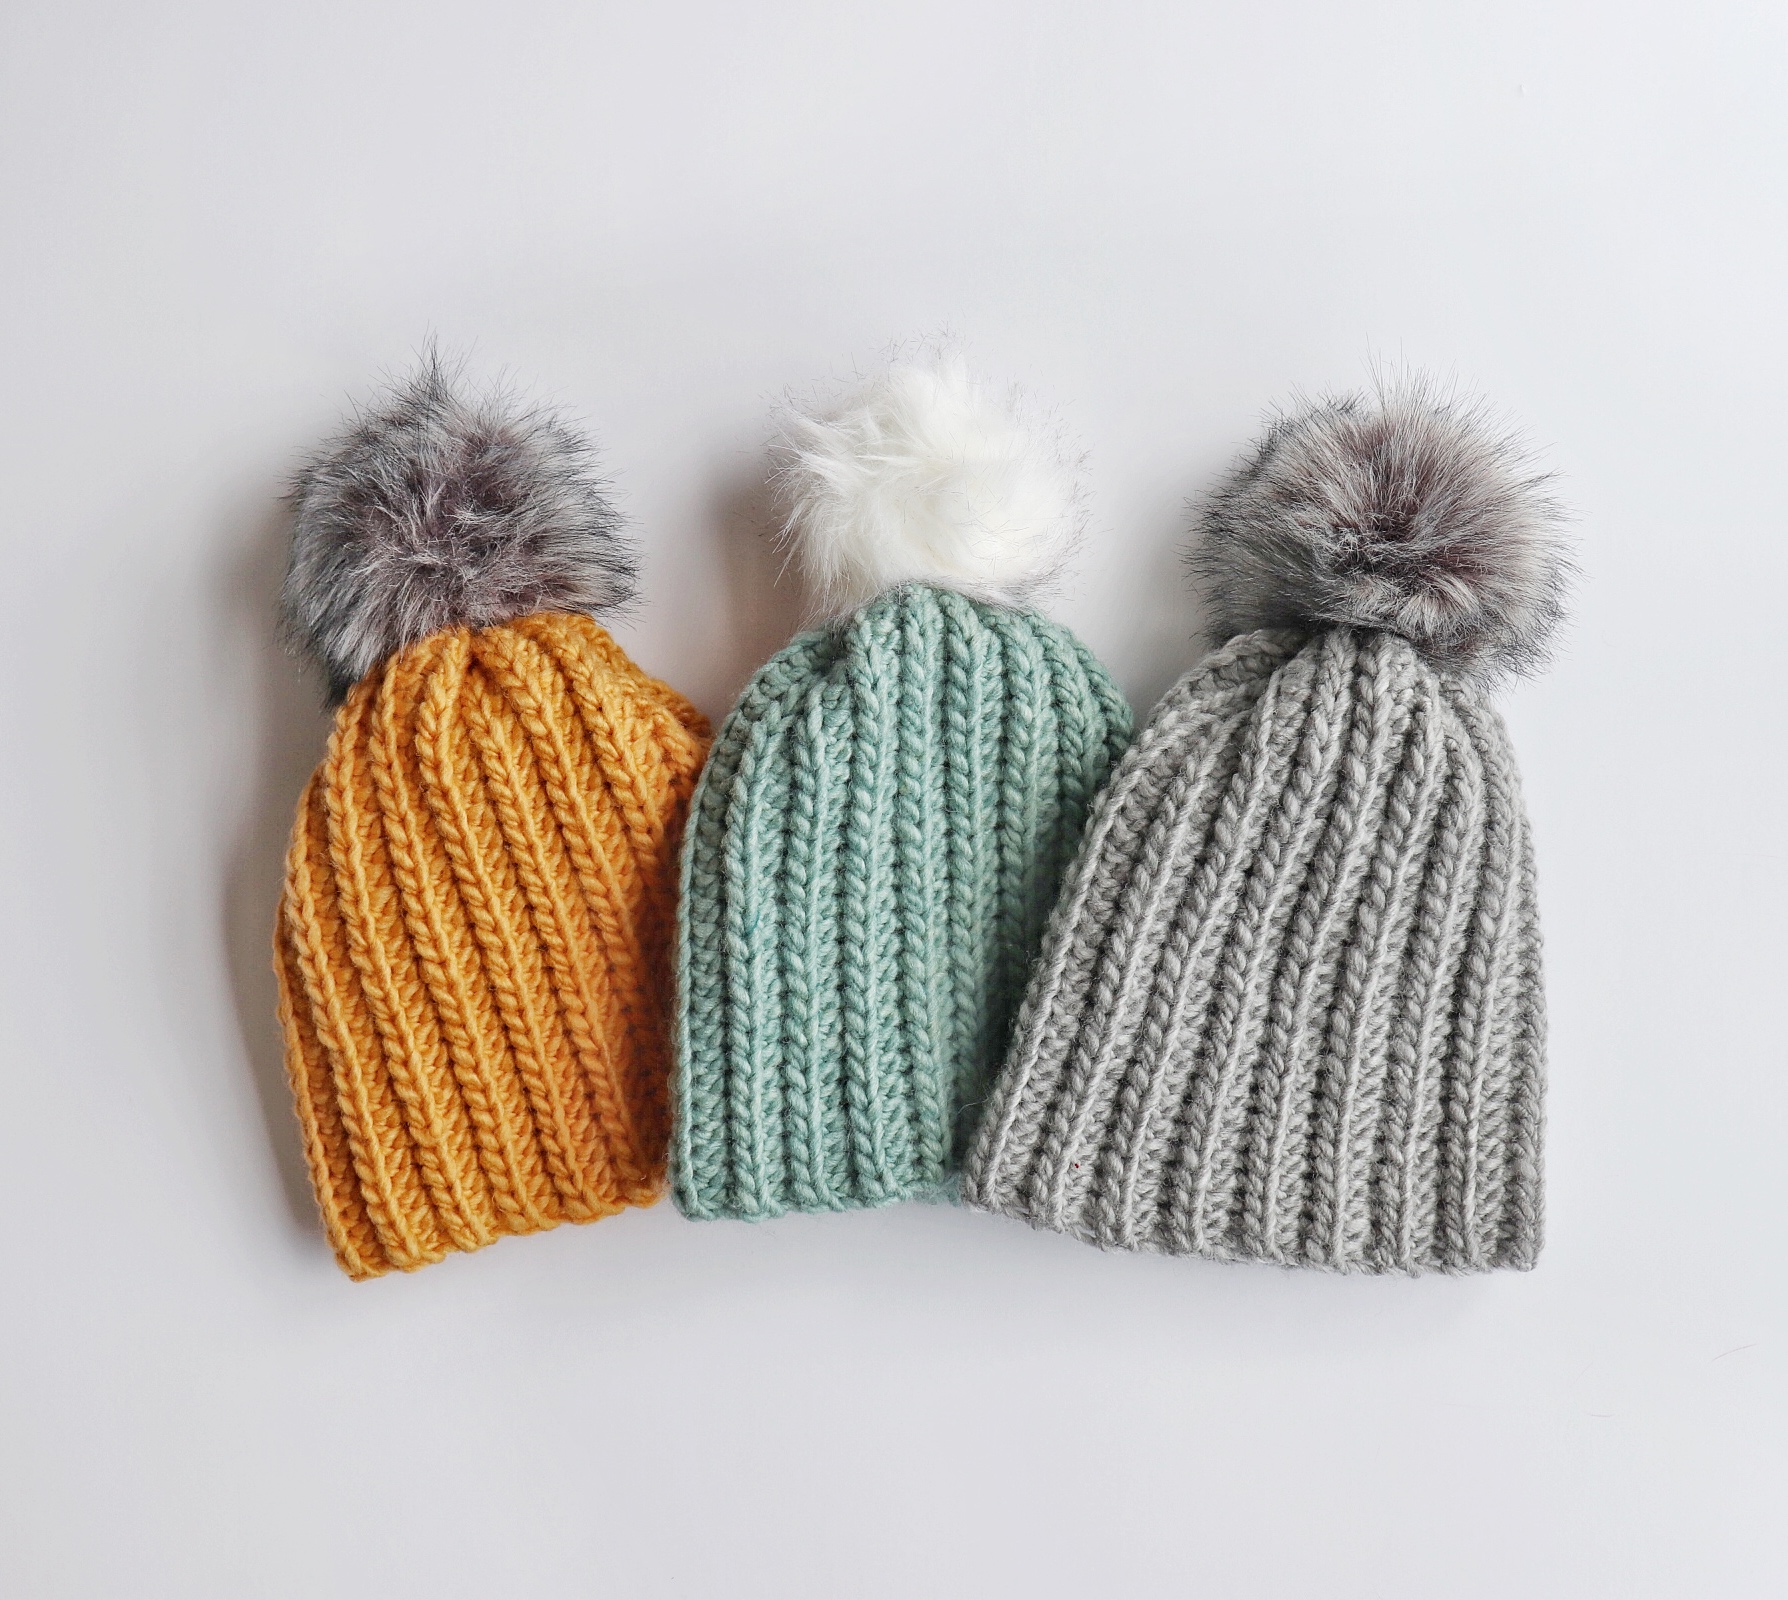 Crochet Beginner Winter Hats - Daisy Farm Crafts